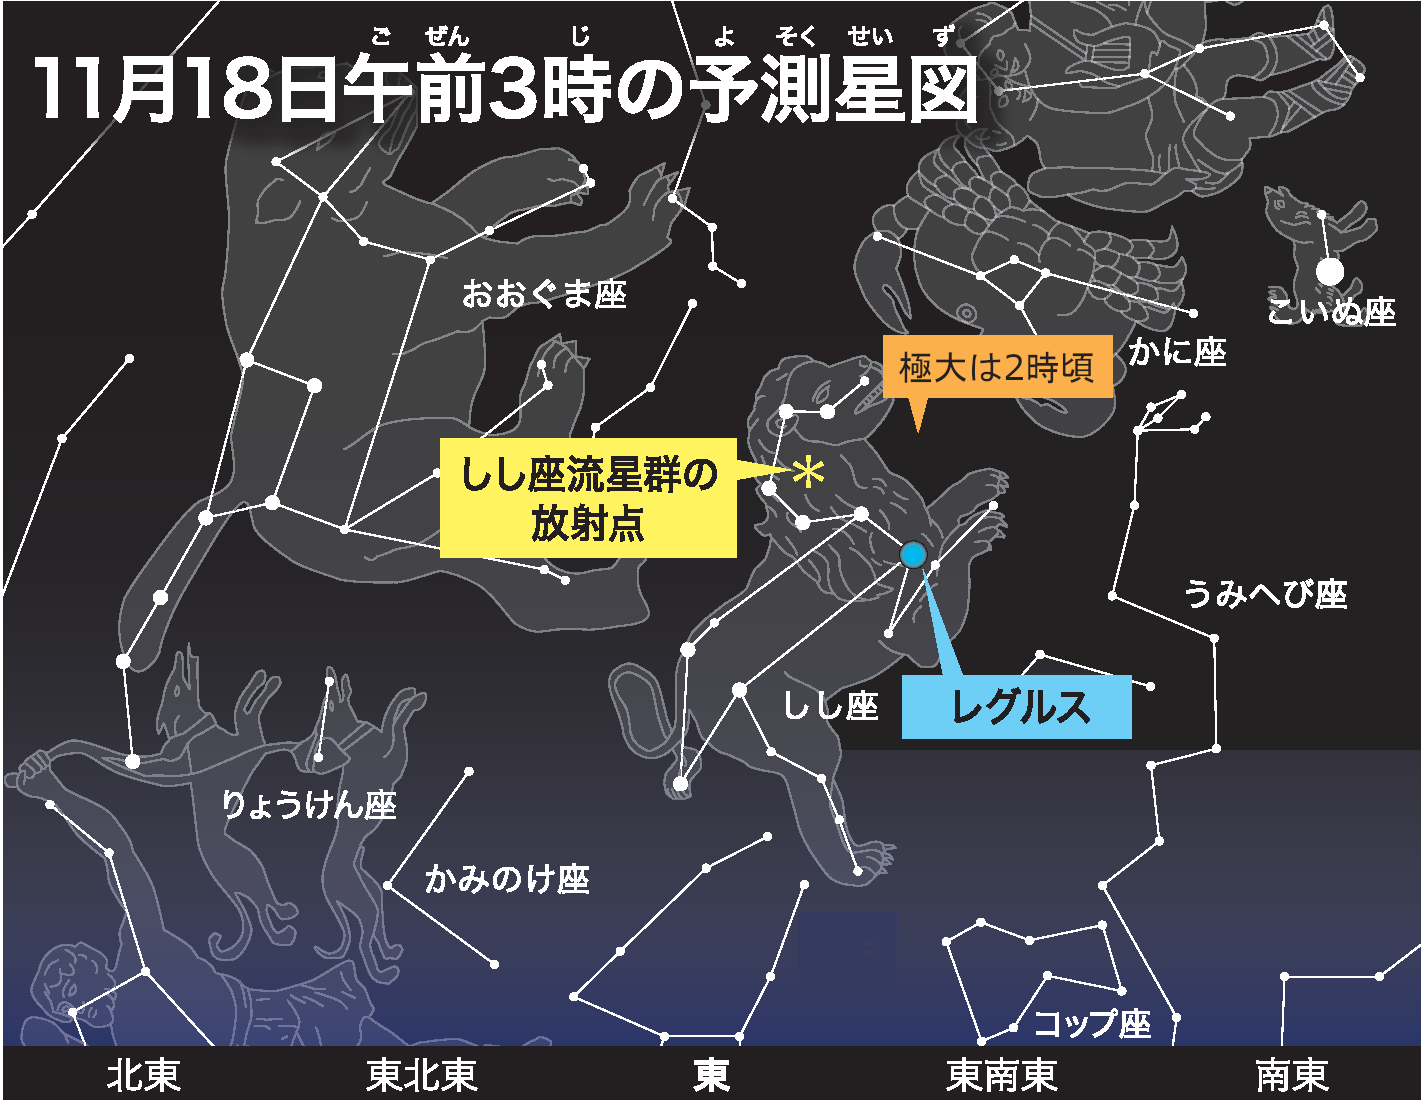 しし座流星群 21年ピーク時間帯 方角は いつまで見える 火球観測の可能性も 社会 福井のニュース 福井新聞online